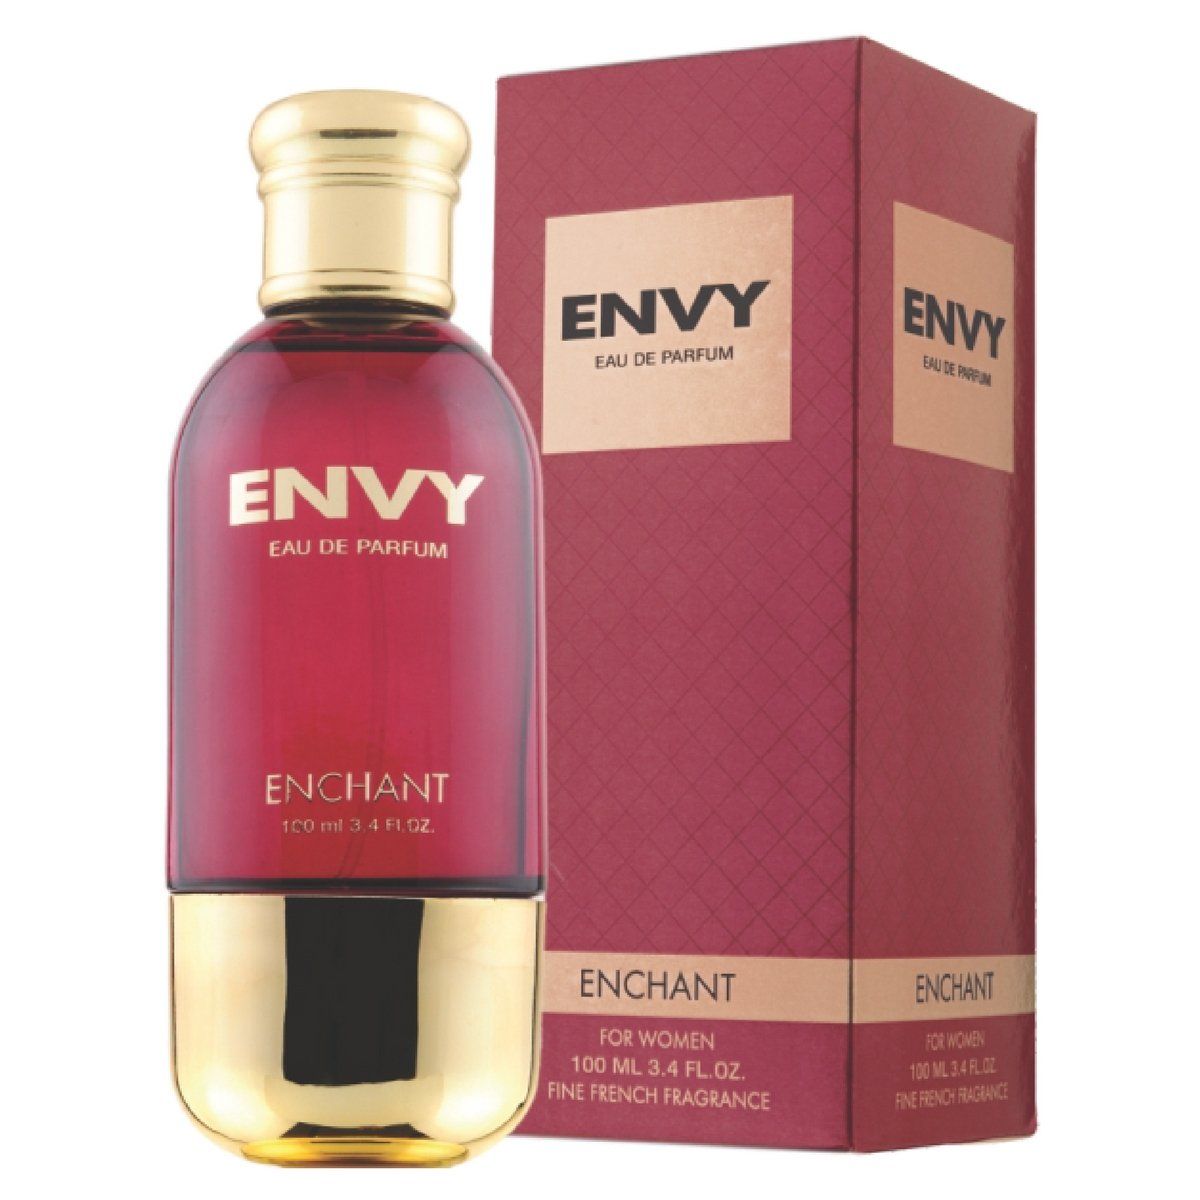 Buy Envy Enchant Eau De Perfum For Women Fine French Fragrance (100 ml) - Purplle